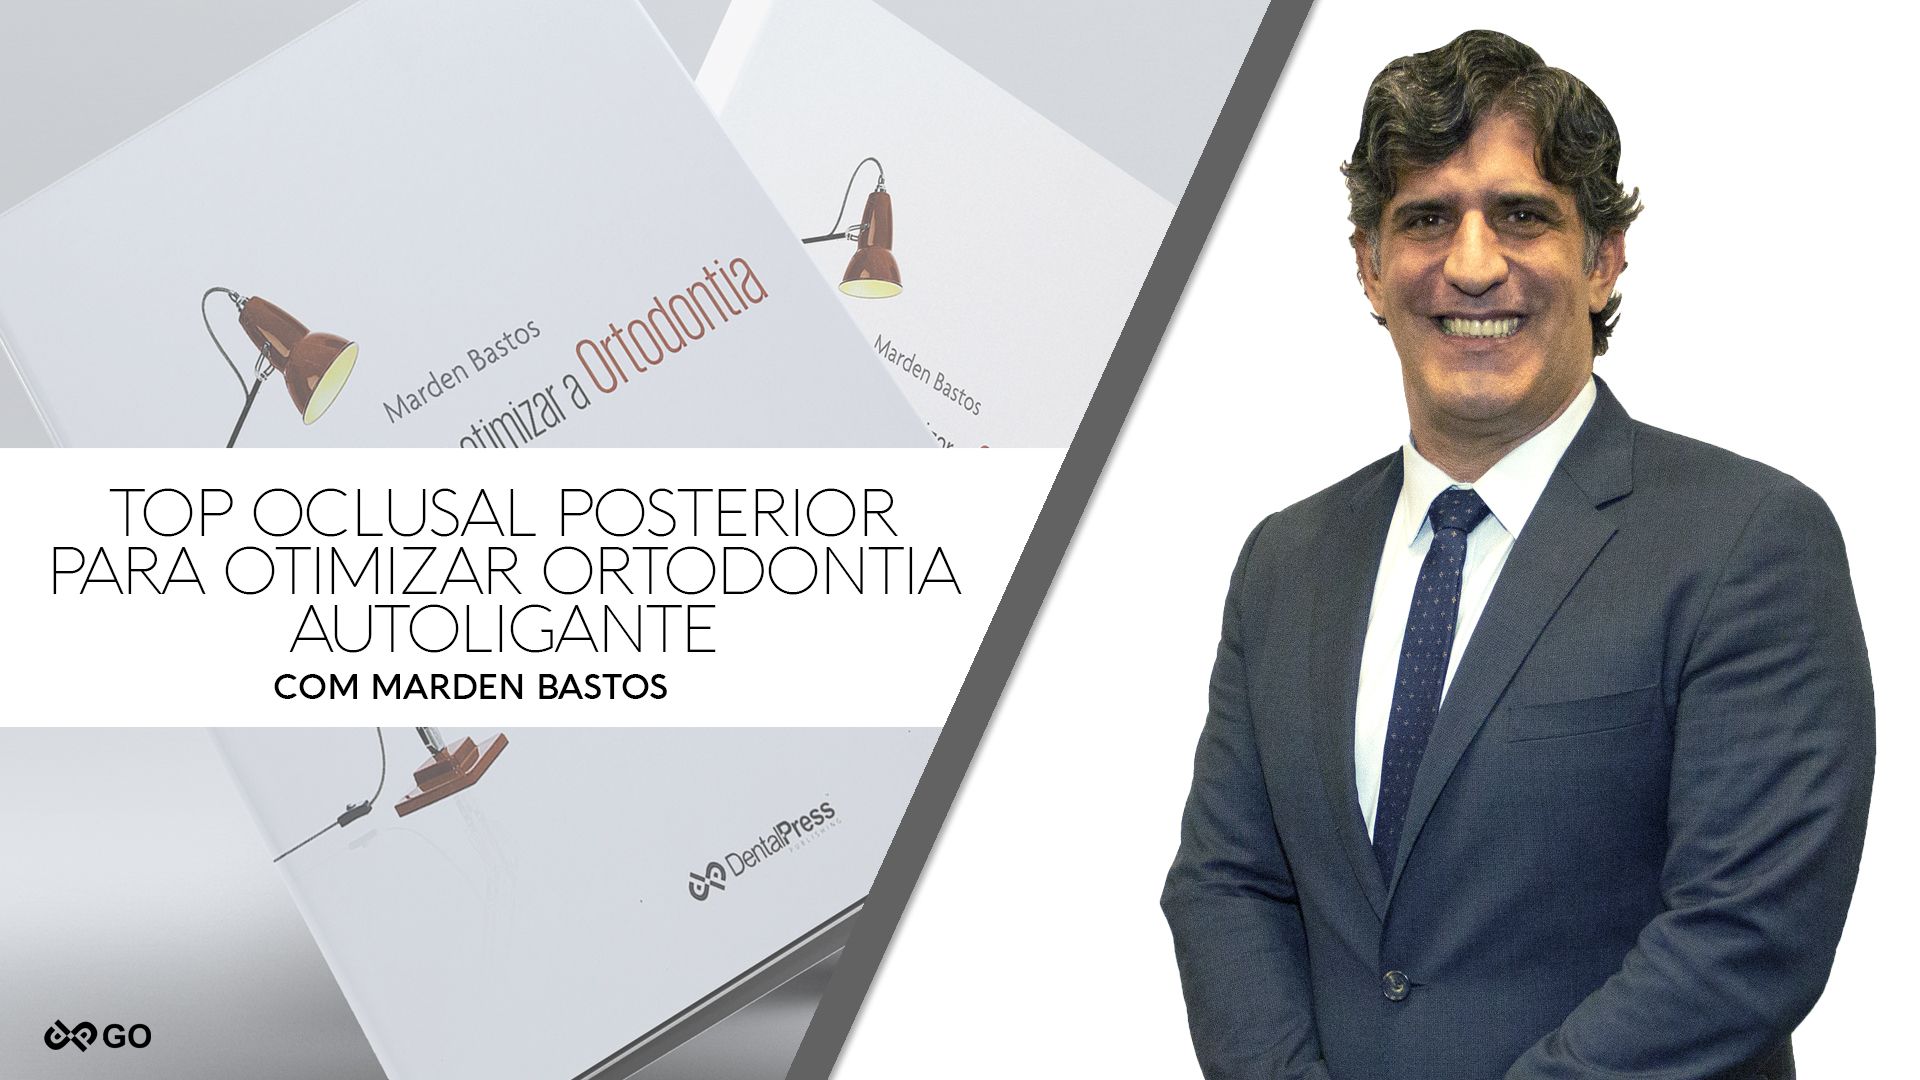 Top Oclusal Posterior para Otimizar Ortodontia Autoligante - Dr. Marden Bastos